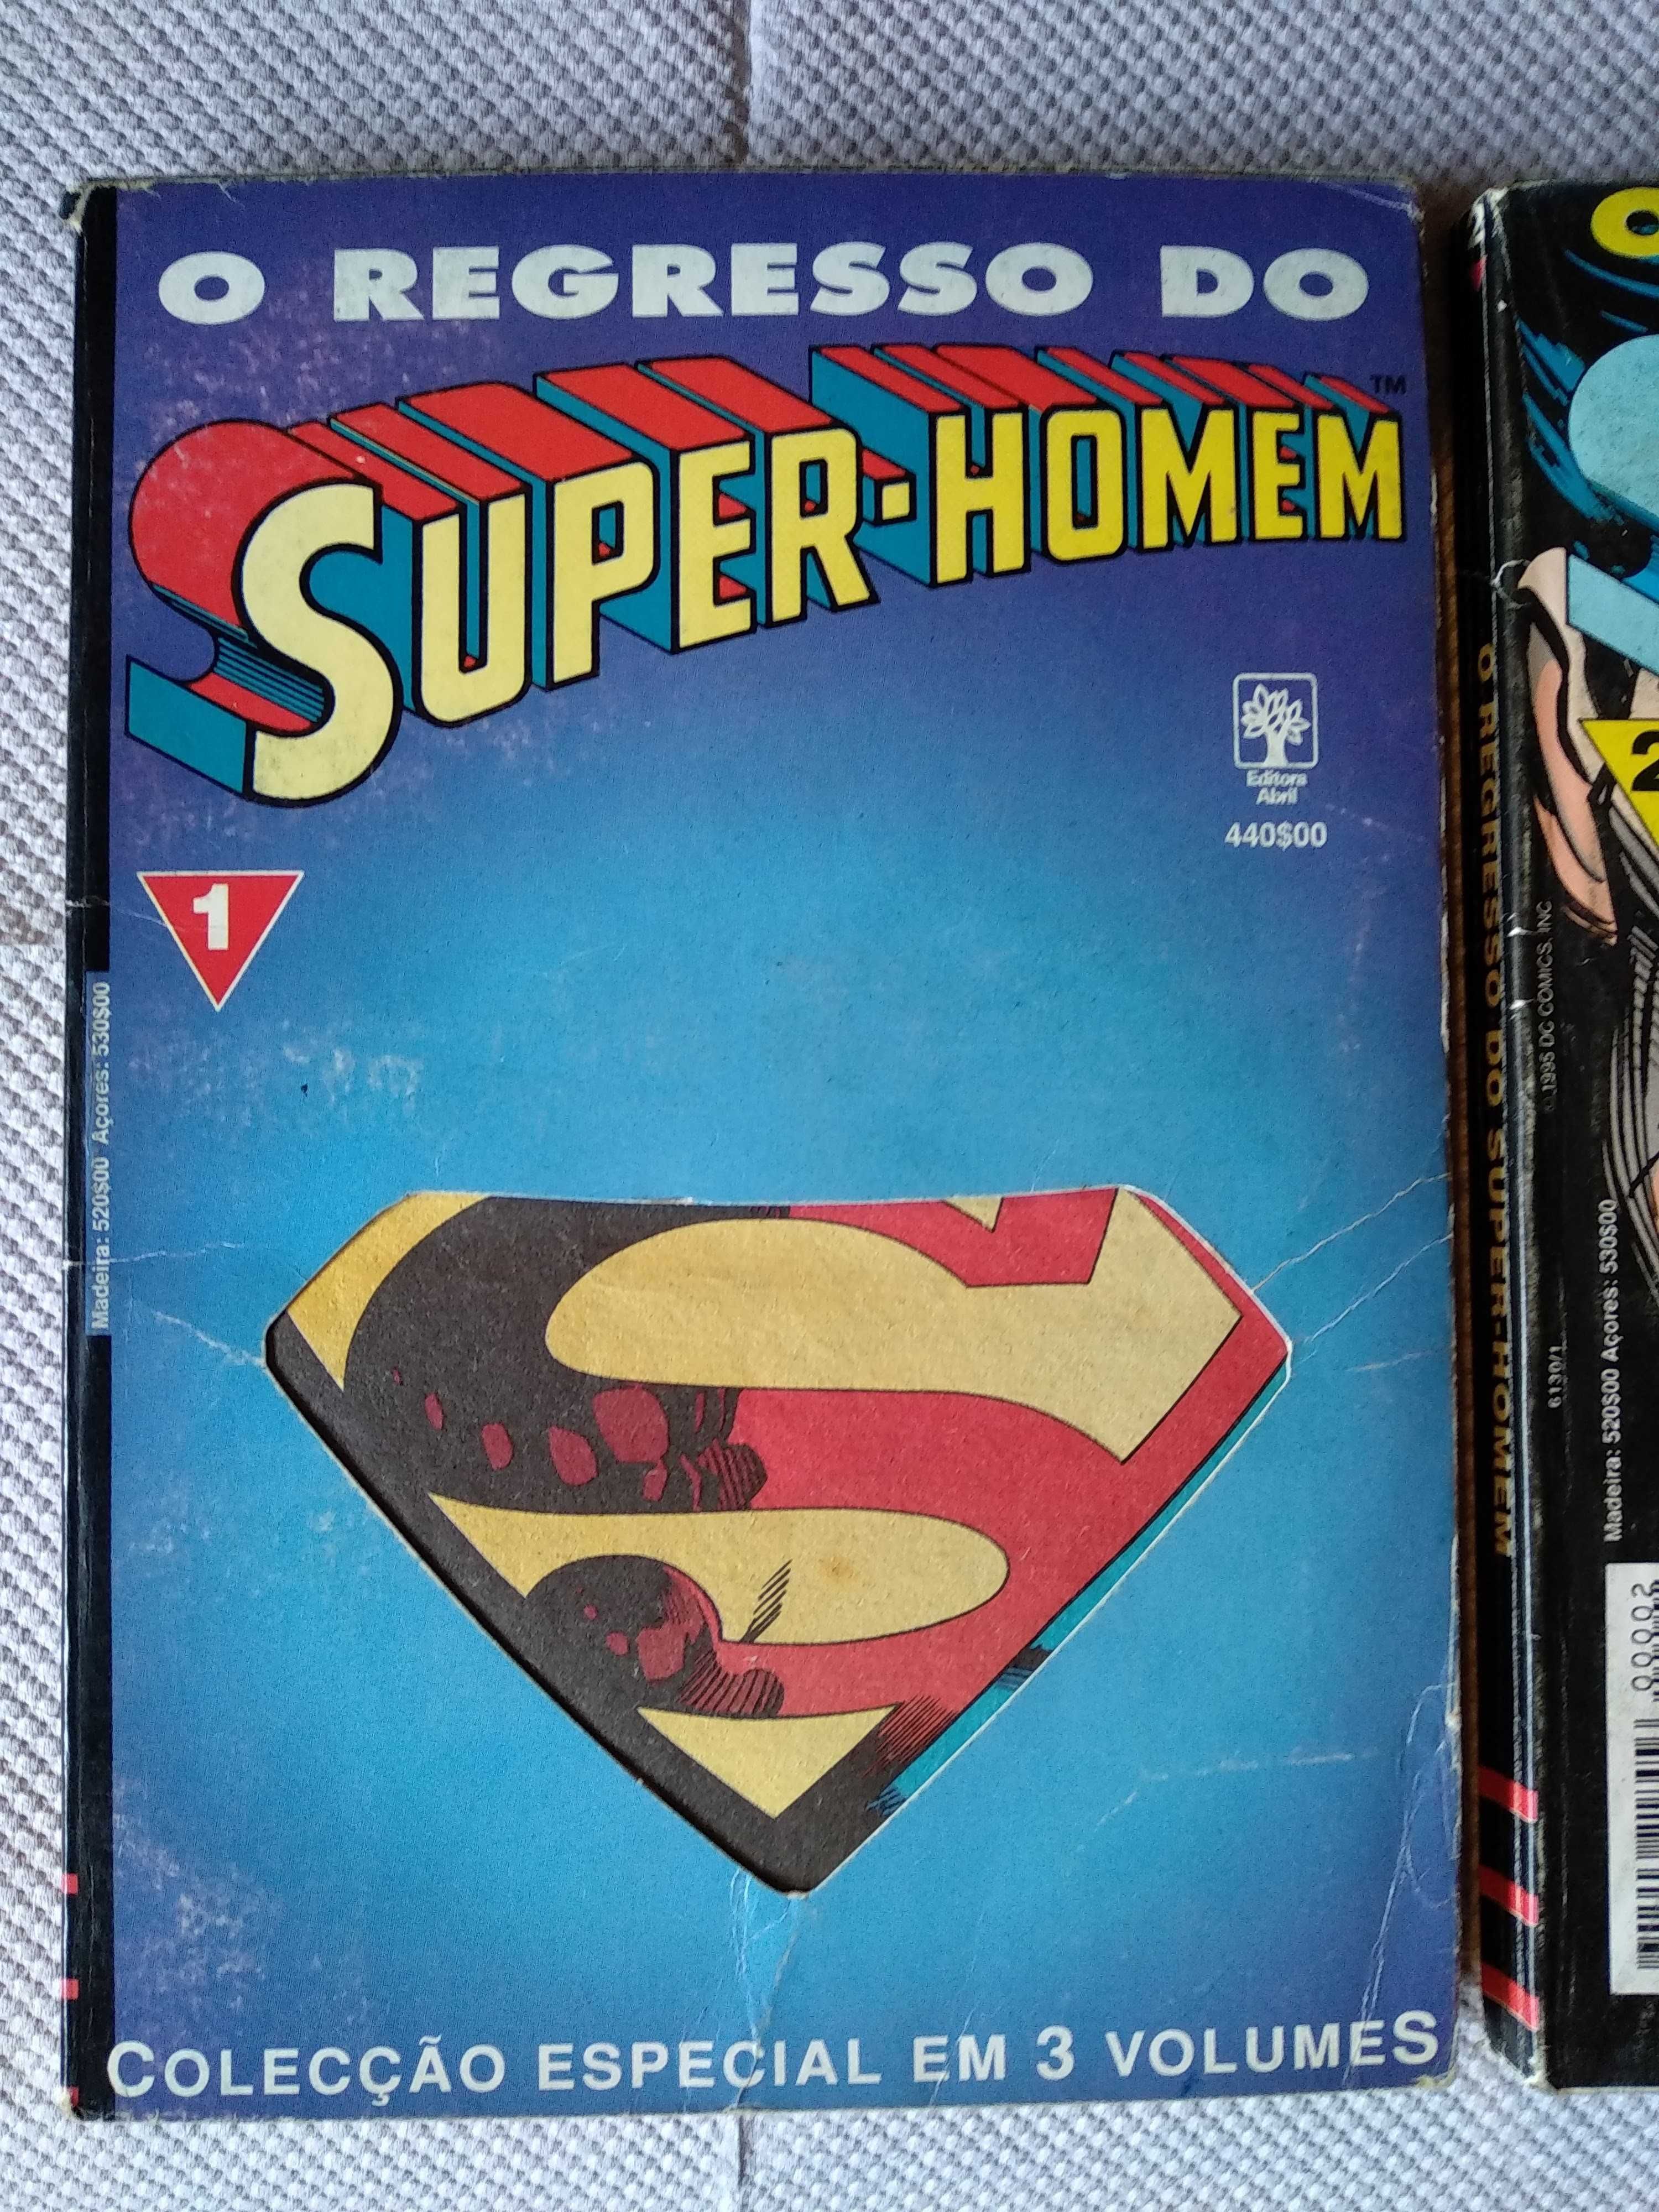 Super-Homem (Superman) Banda Desenhada Editora Abril - 1995 DC Comics